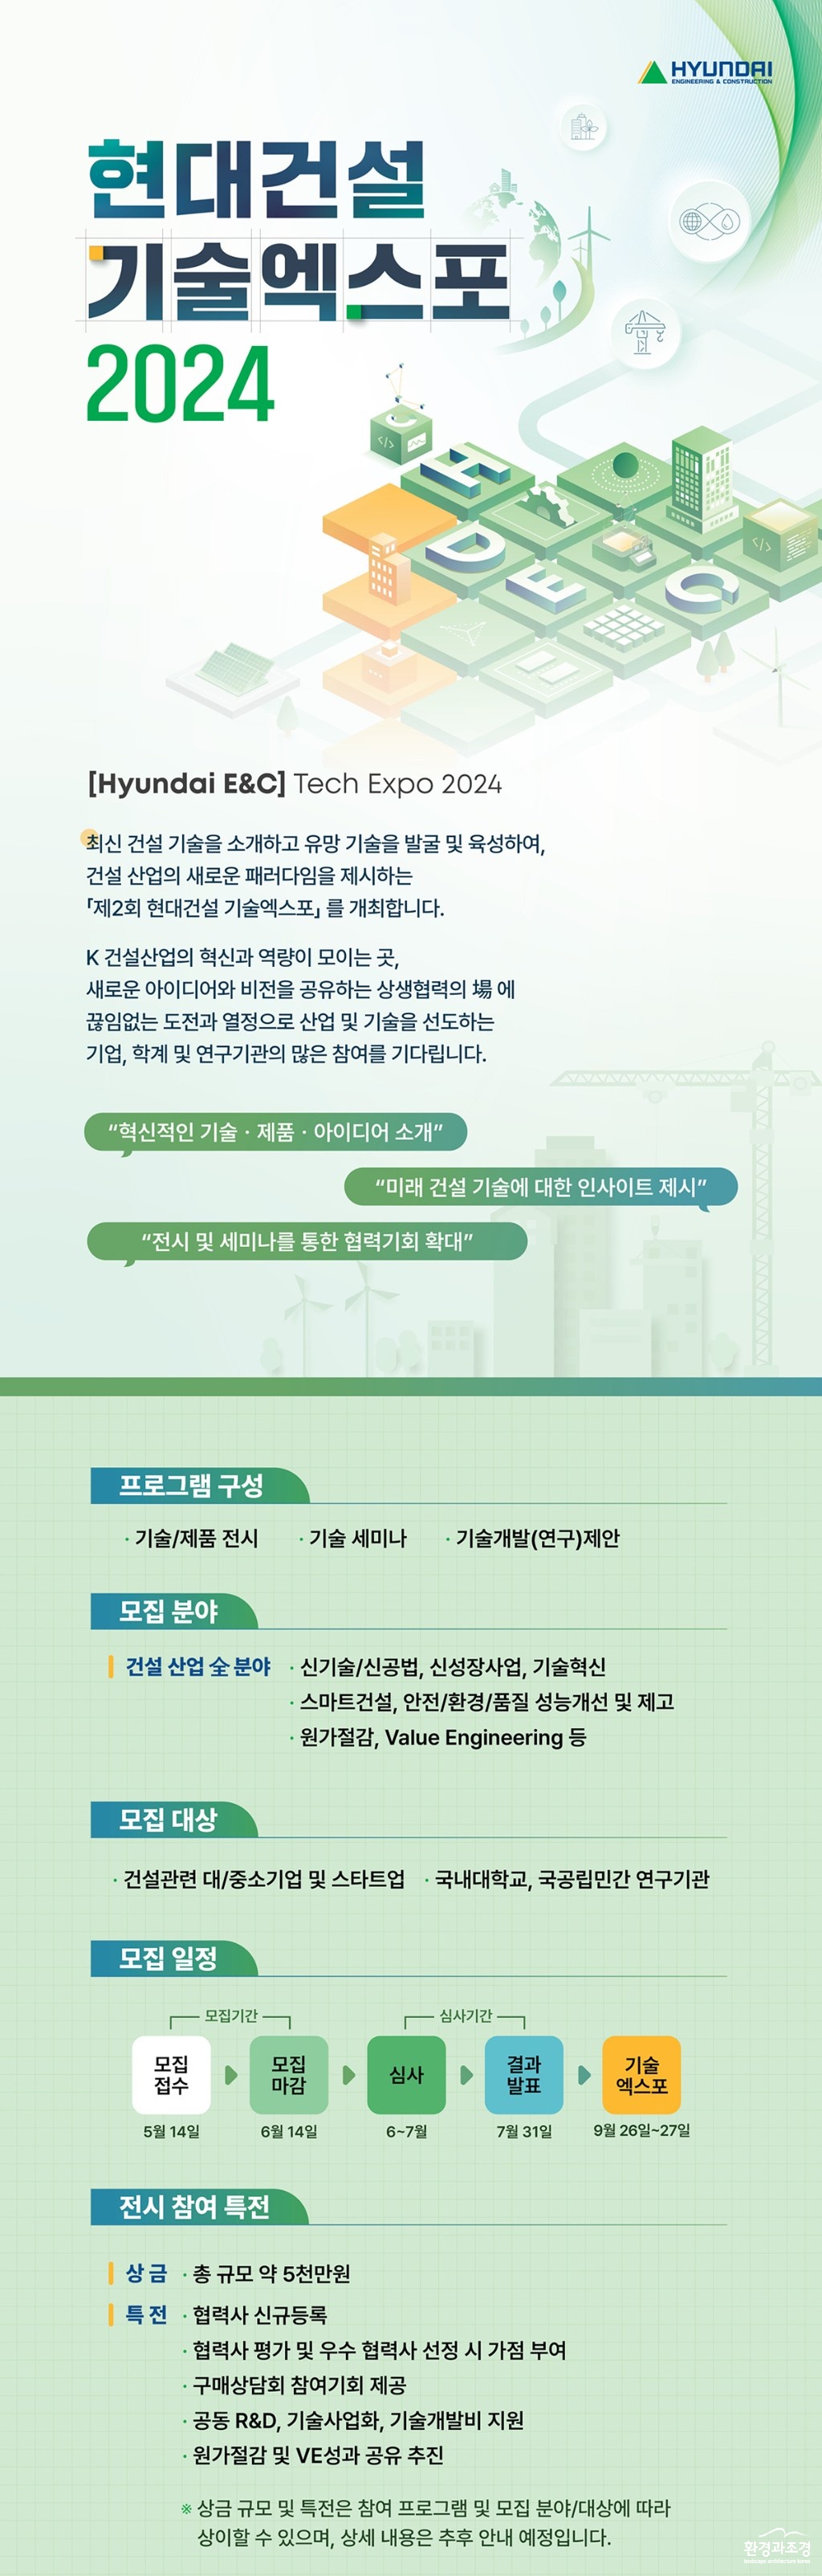 첨부2. 현대건설 기술엑스포 2024 참여 모집 포스터.jpg